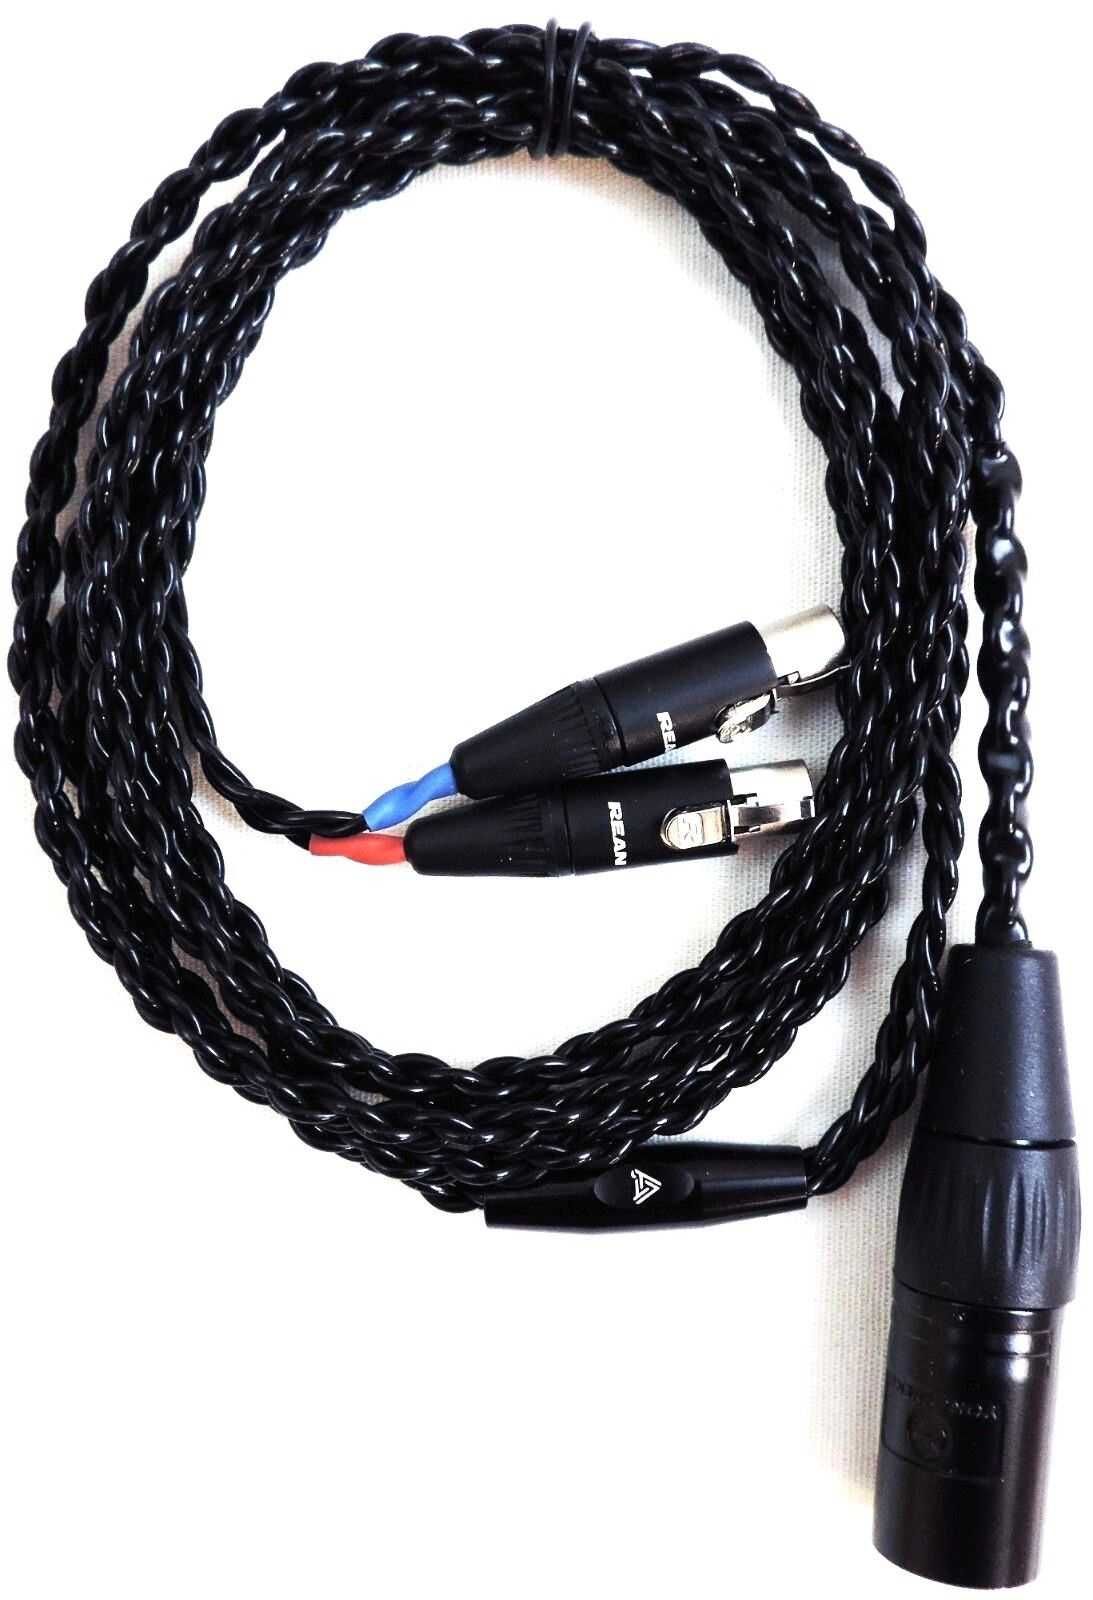 Audeze - фирменные кабели премиум-класса для наушников